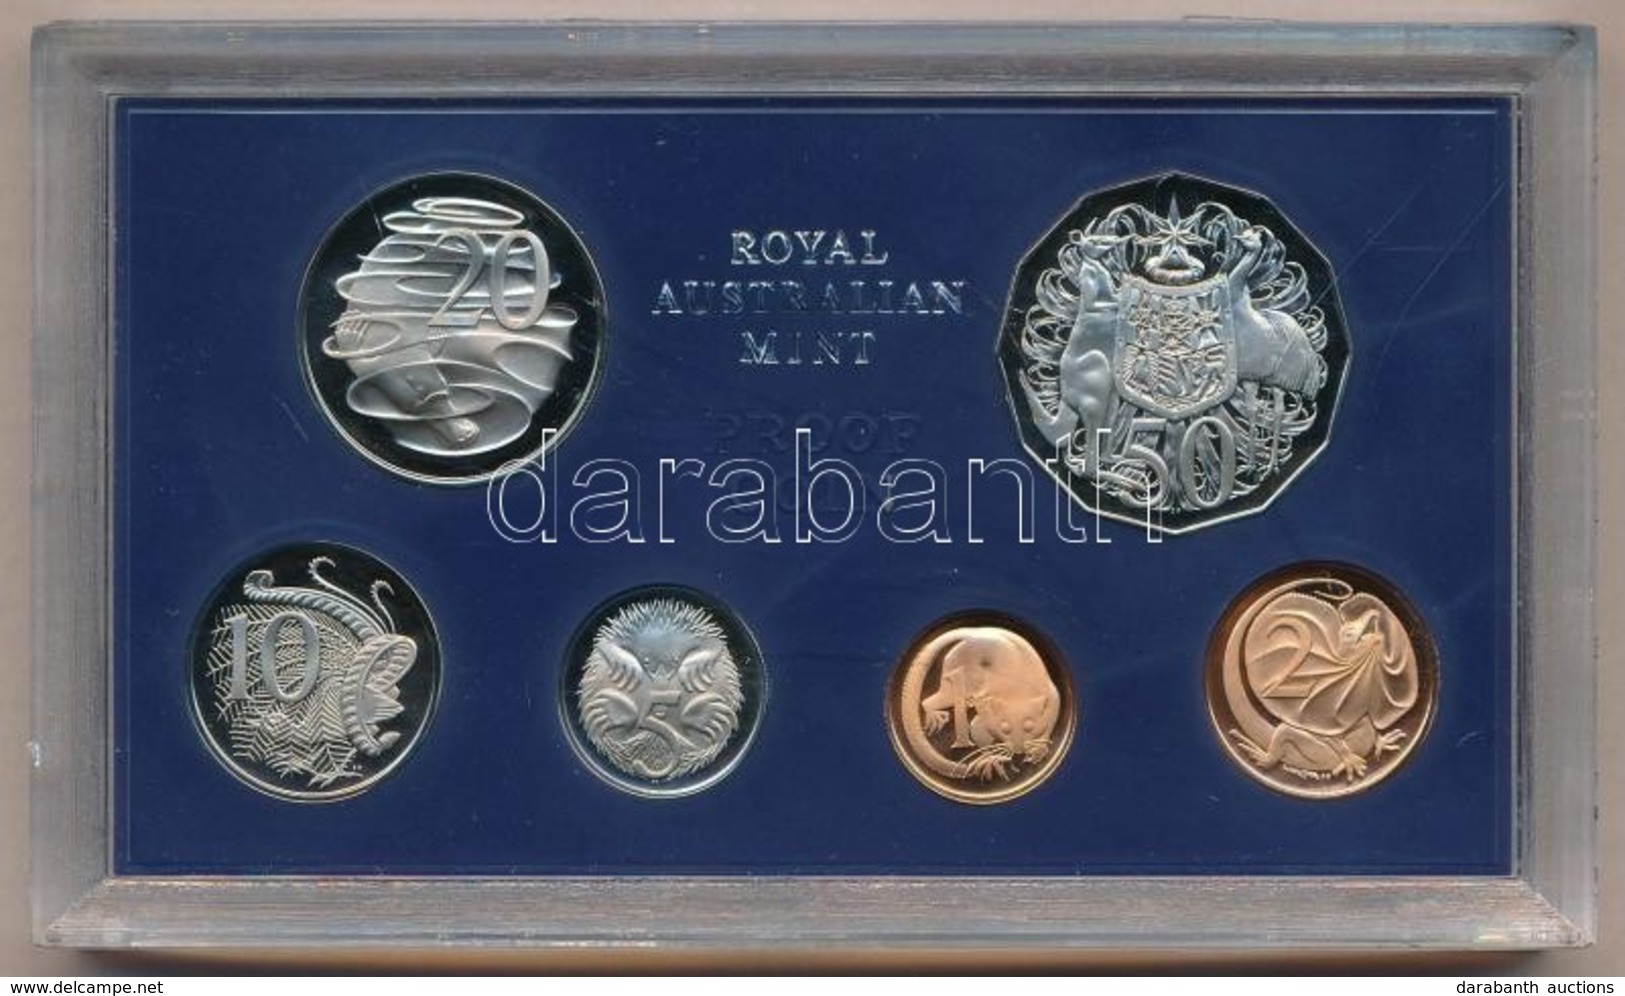 Ausztrália 1978. 1c-50c (6xklf) Forgalmi Szett M?anyag Tokban T:PP
Australia 1978. 1c - 50 Cents (6xklf) Coin Set In Pla - Ohne Zuordnung